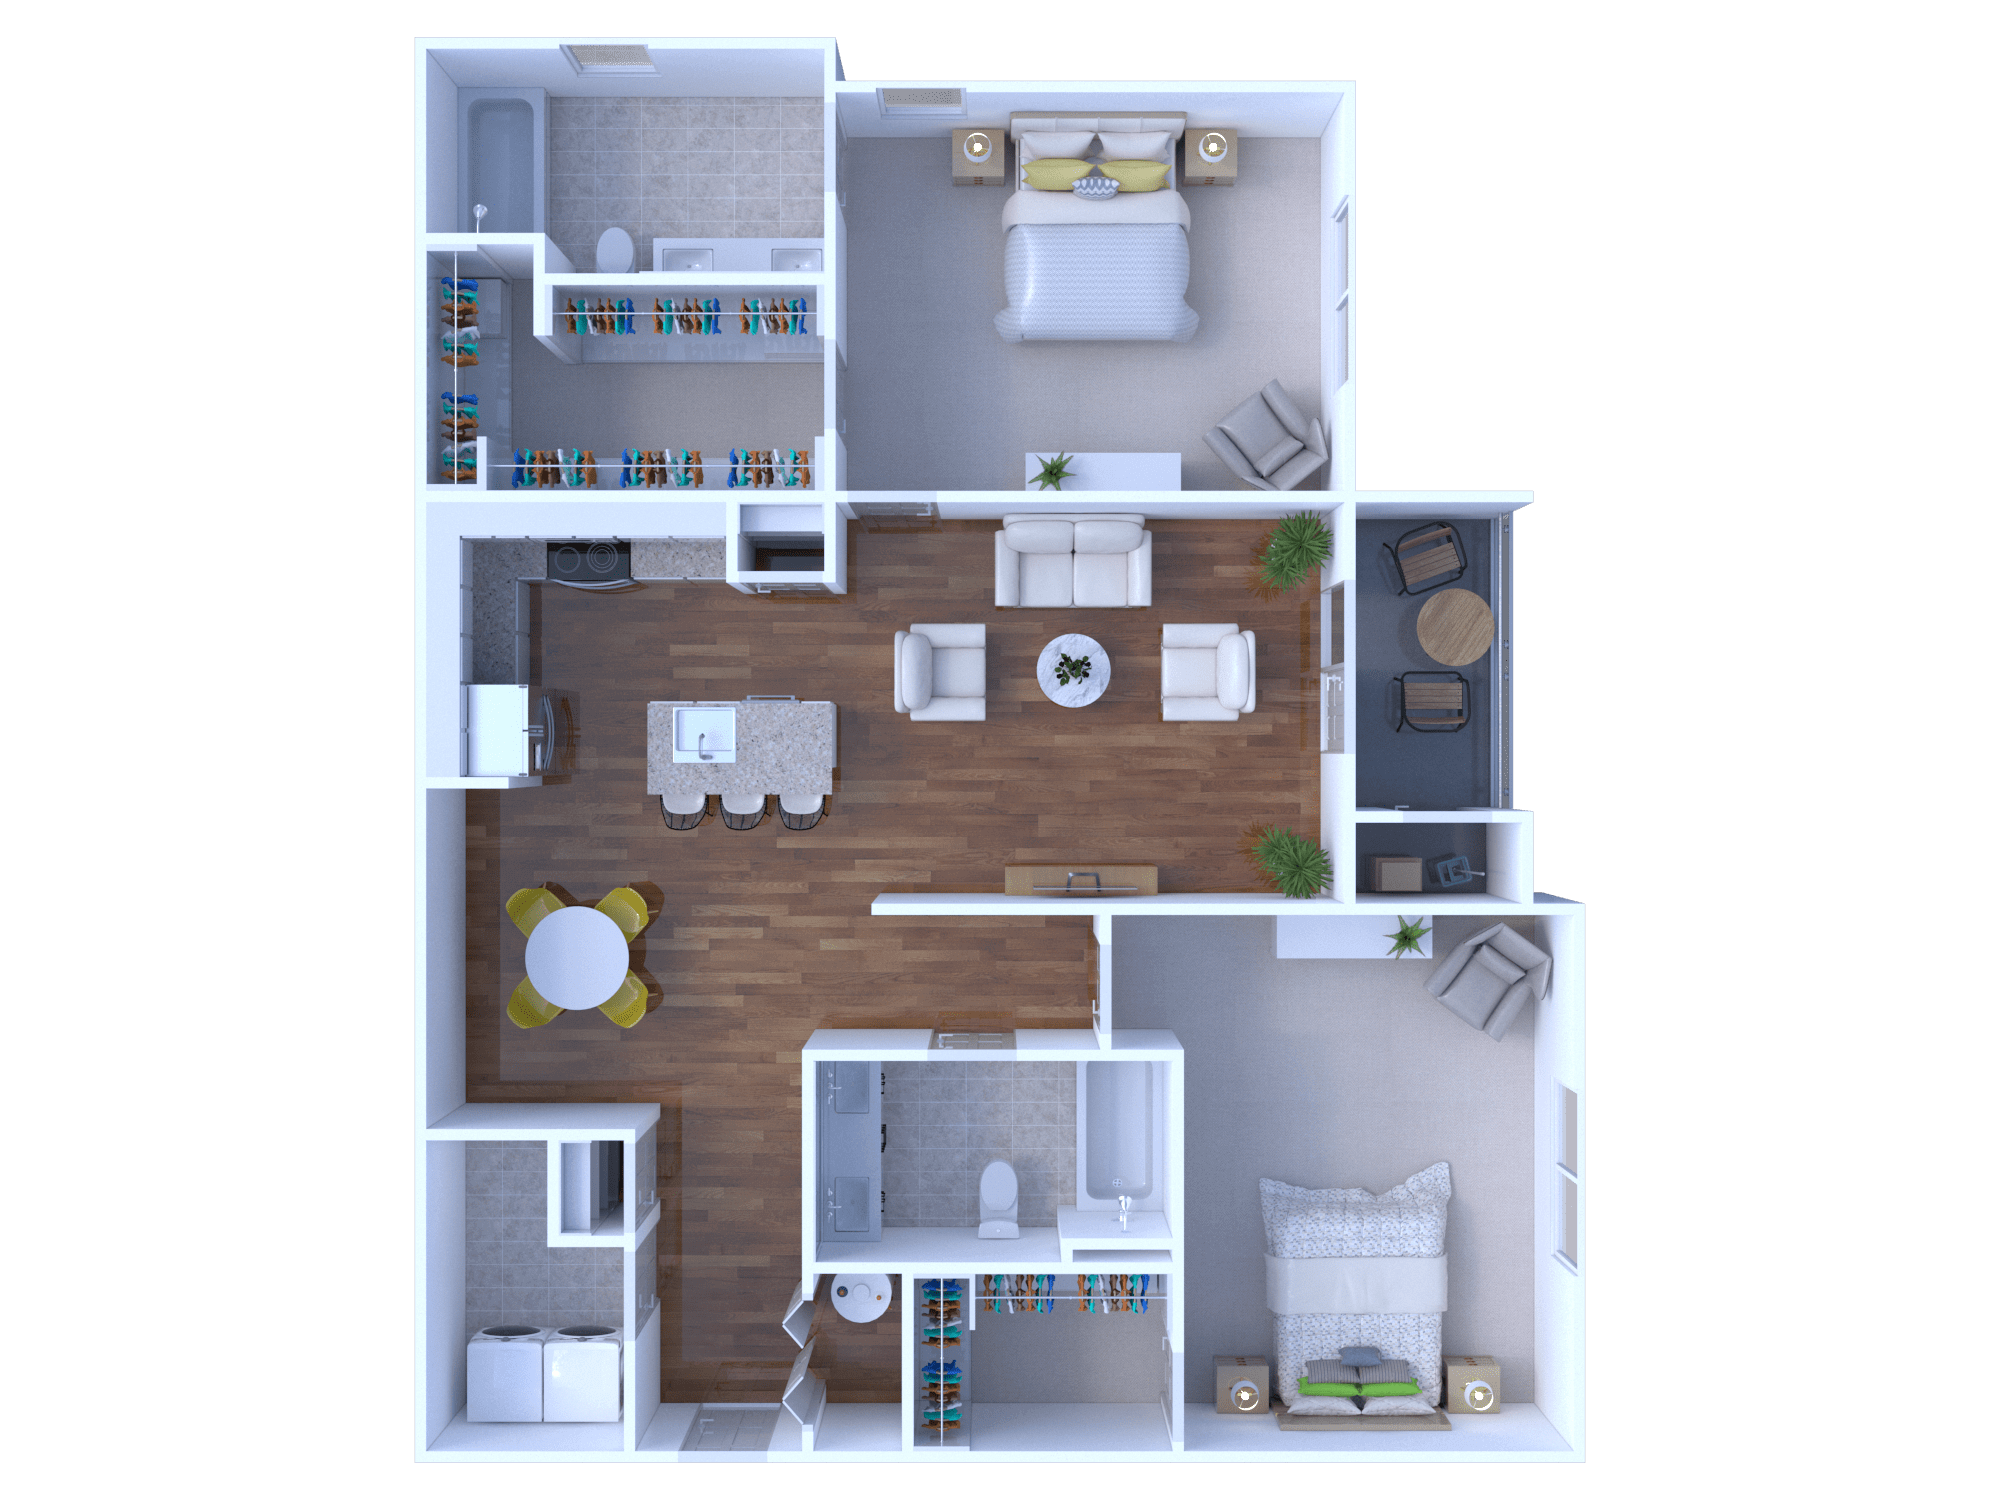 Two Bedrooms Floorplan